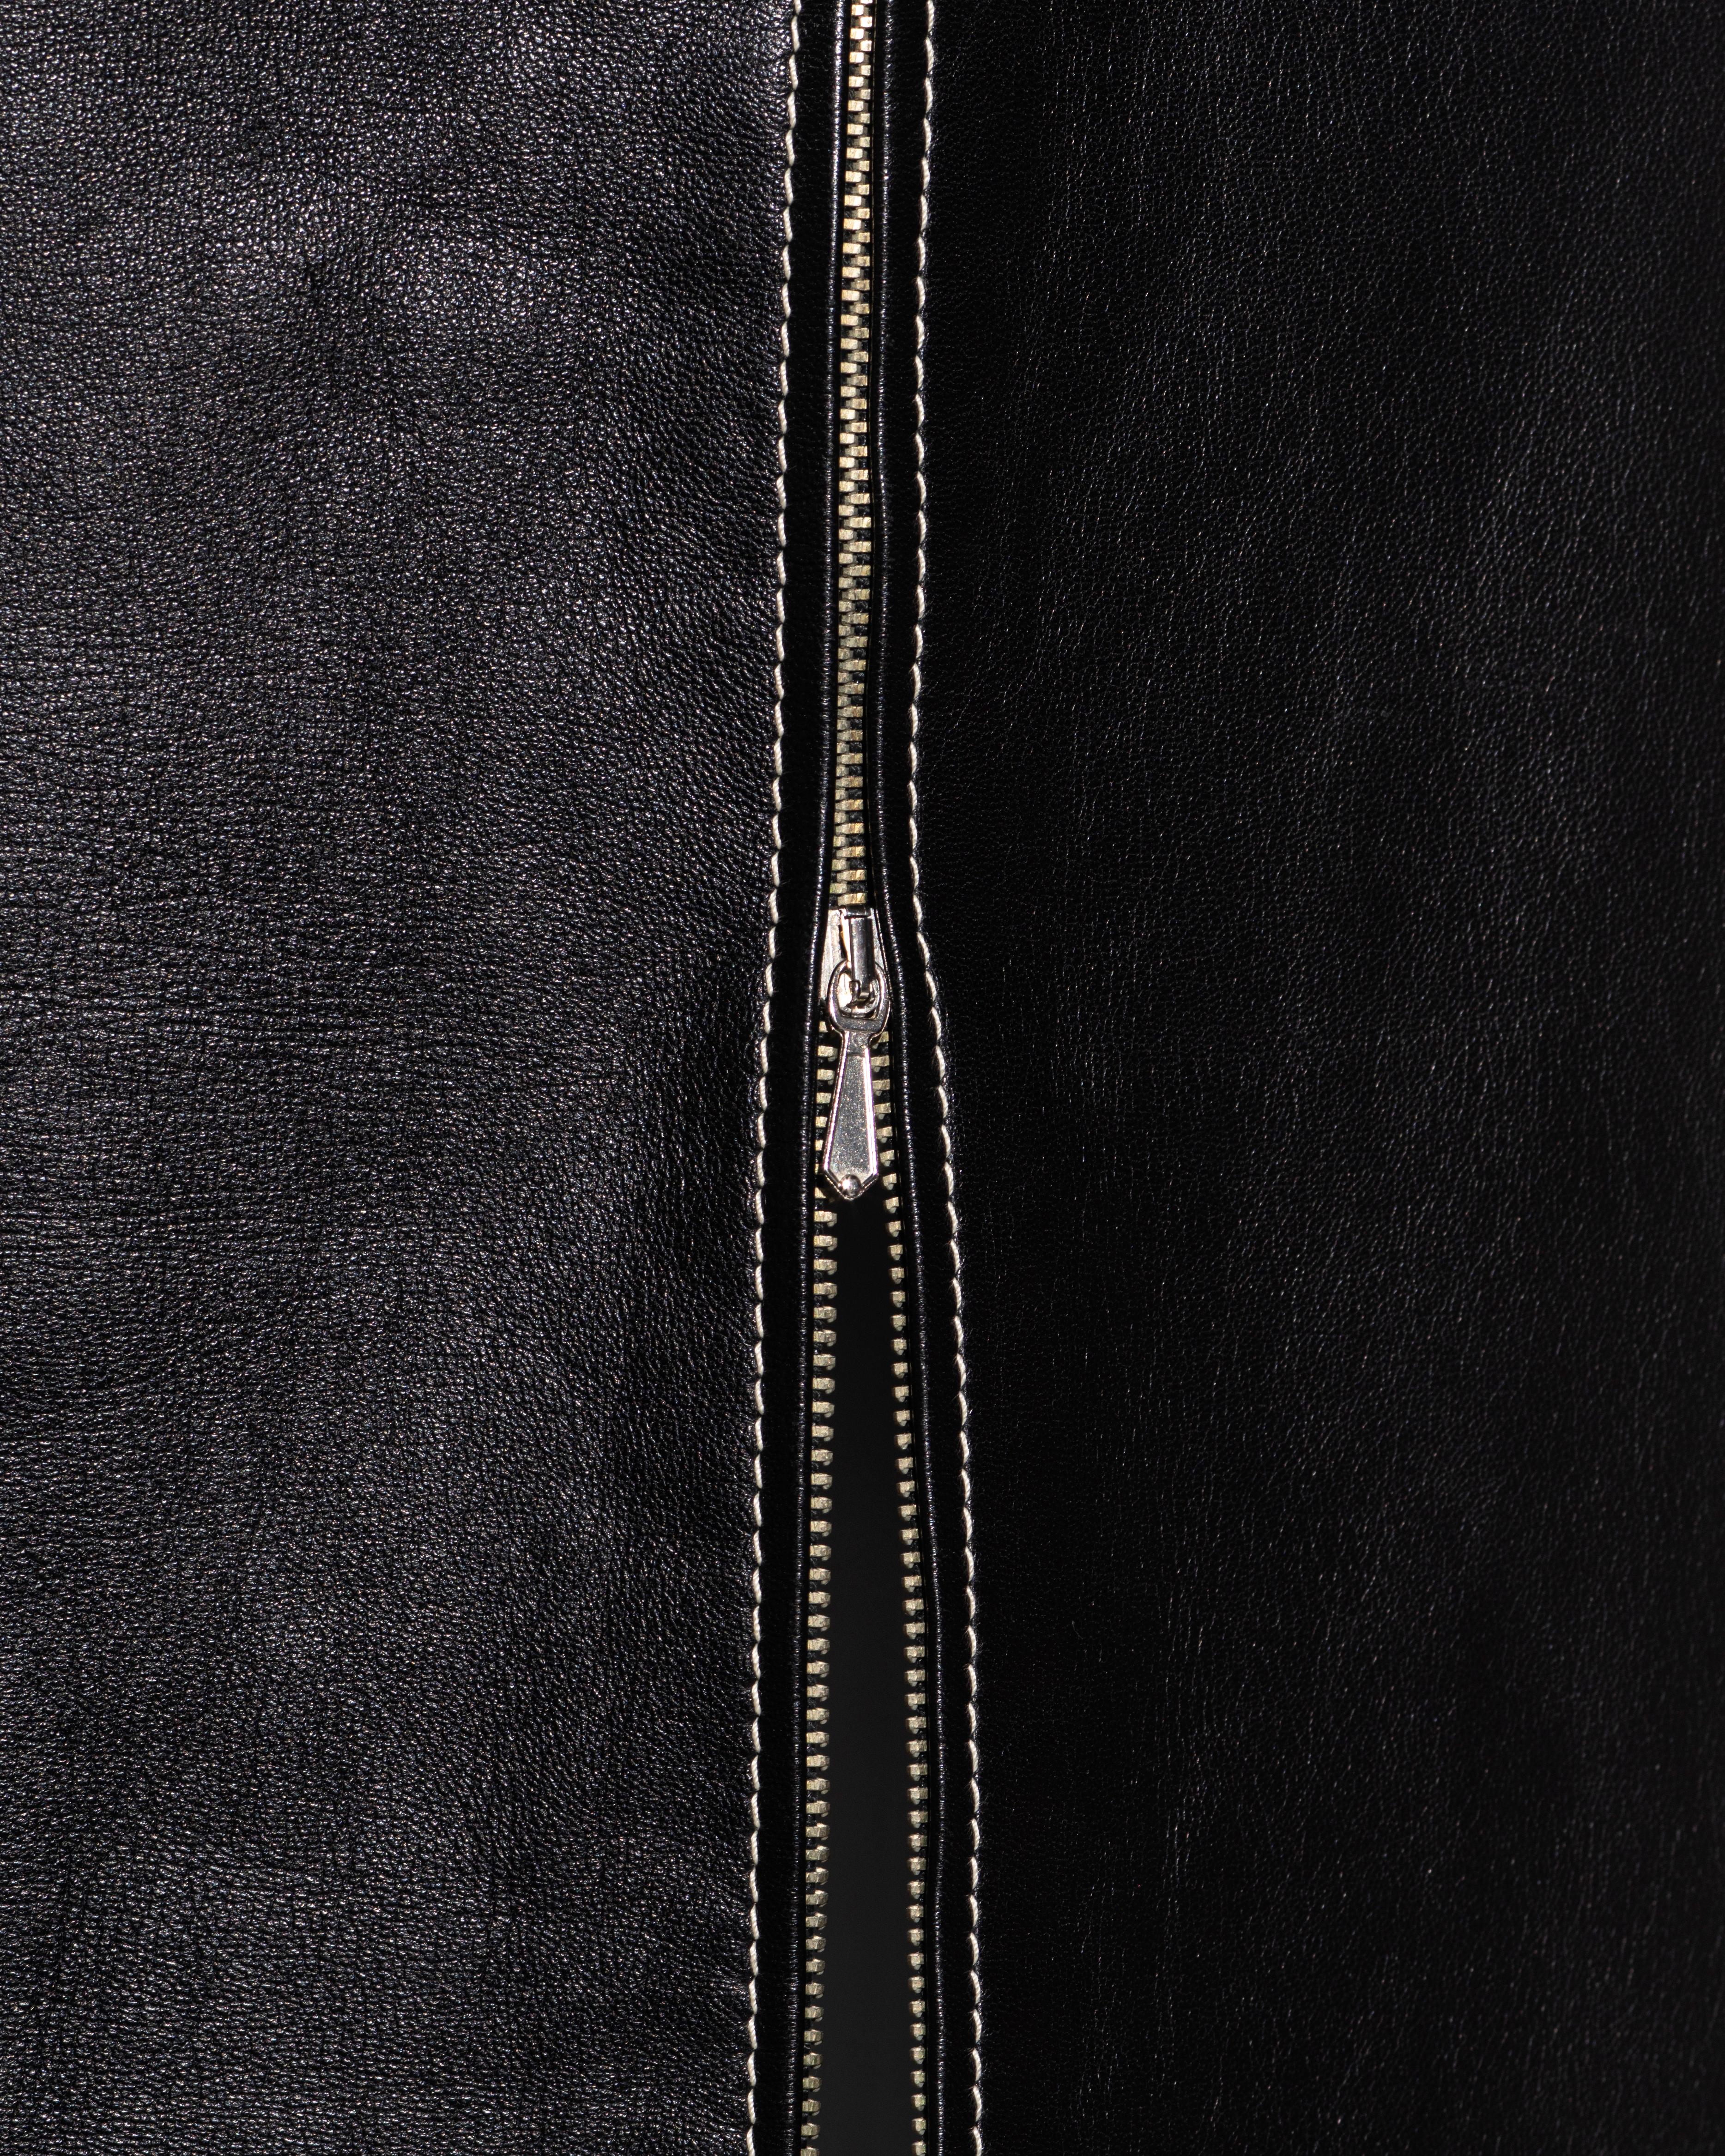 Jean Paul Gaultier black leather waistcoat dress, fw 1992 2